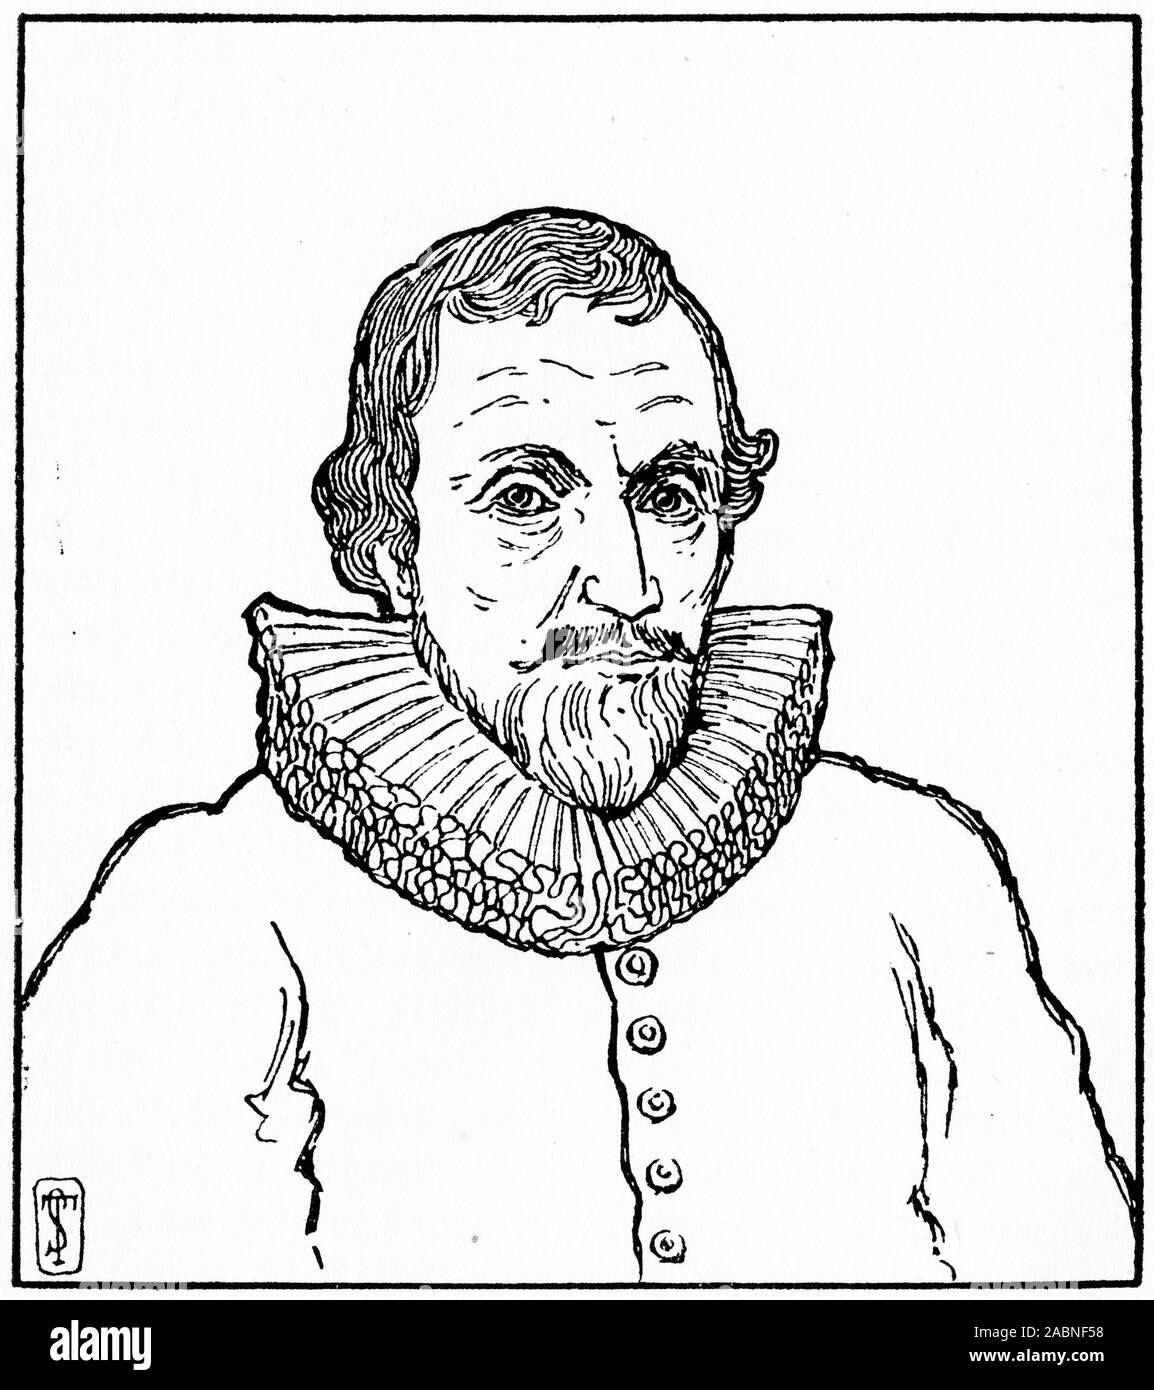 Portrait gravé d'Alexander Henderson (c. 1583 - 1646) théologien écossais et un important homme d'ecclésiastiques de son époque. Considéré comme le second fondateur de l'Église réformée de l'Ecosse et l'un des plus grands ministres de l'Église d'Écosse Banque D'Images